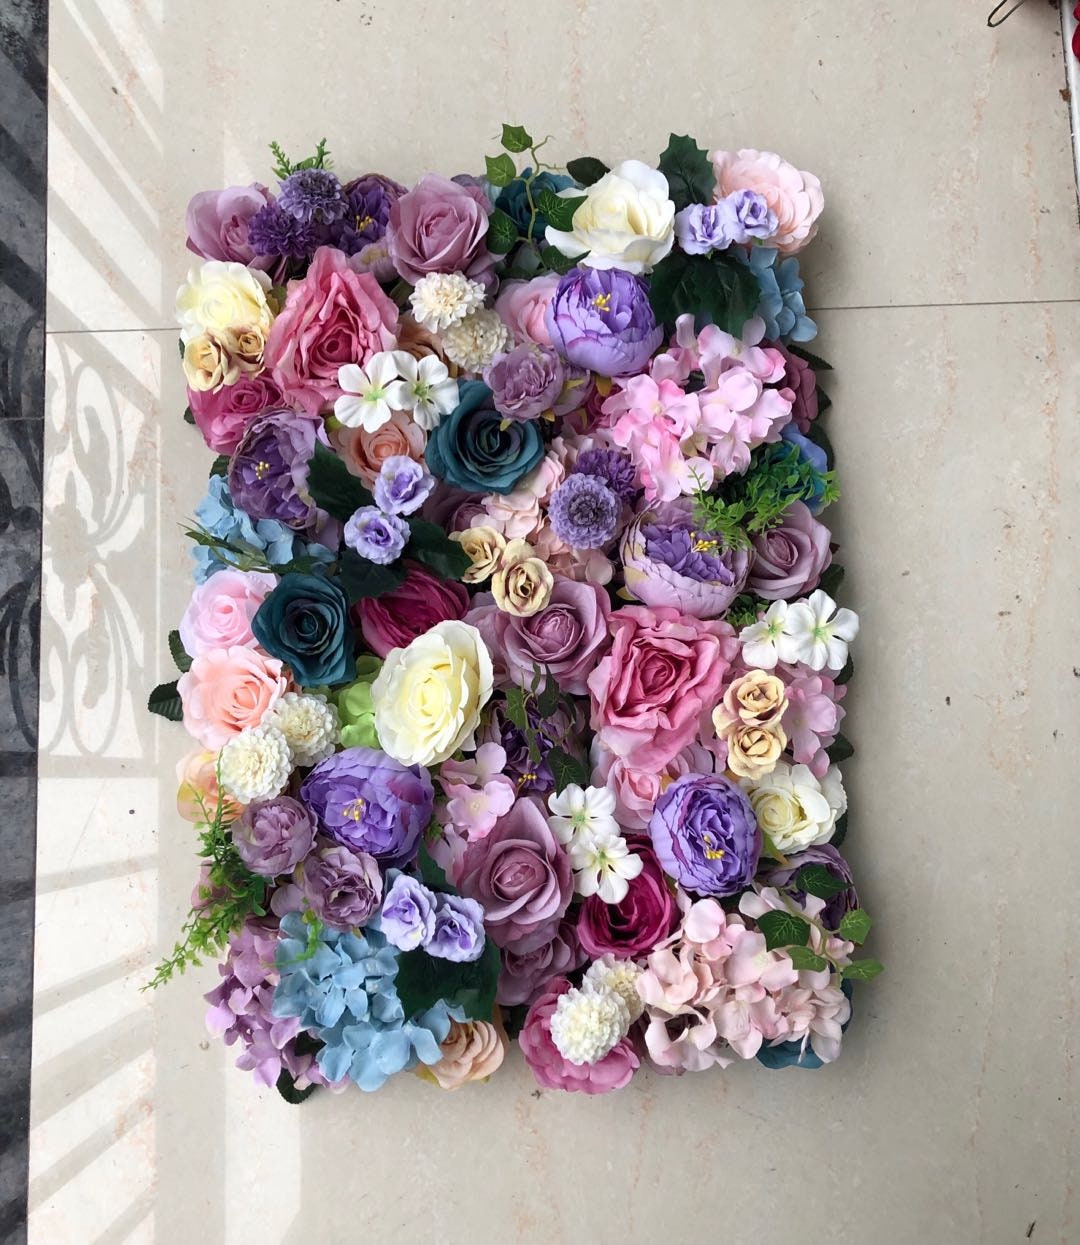 New Arrival Flower Wall Wedding Photography Backdrop Special Event Party Boutique Shop Arrangement Decor Floral Panels 40x60cm